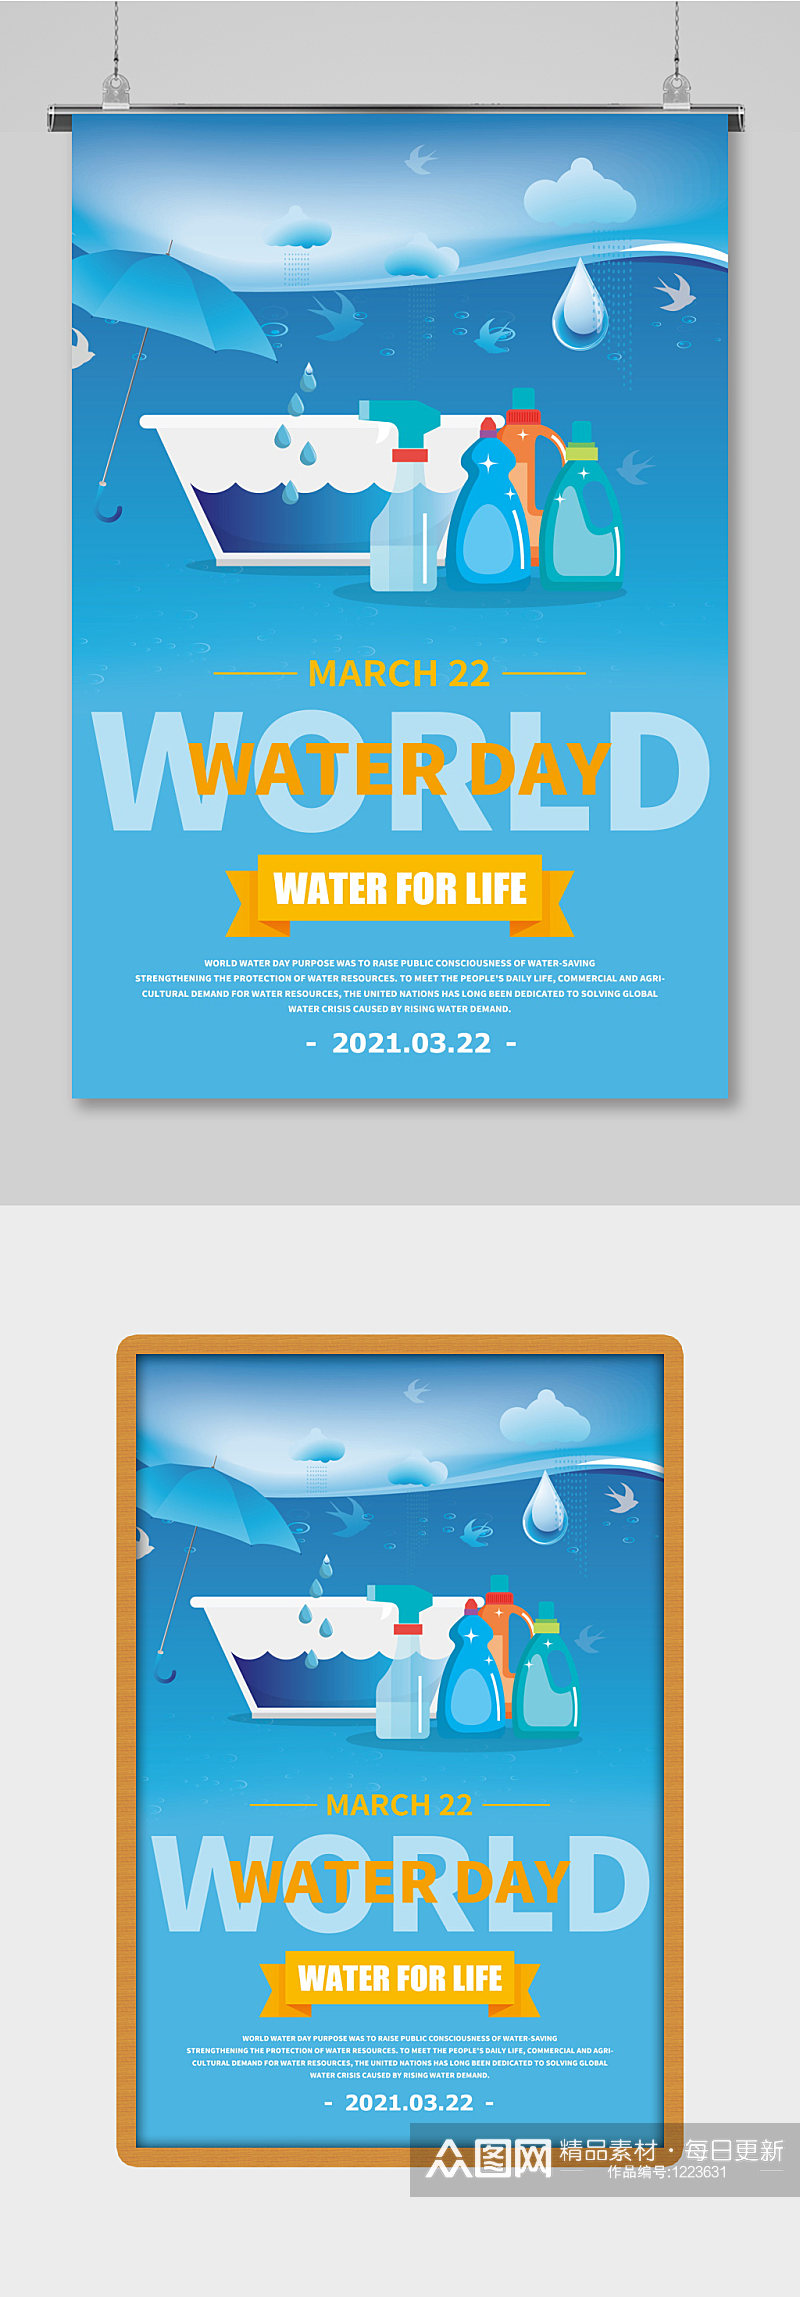 世界水日纯英文宣传海报素材